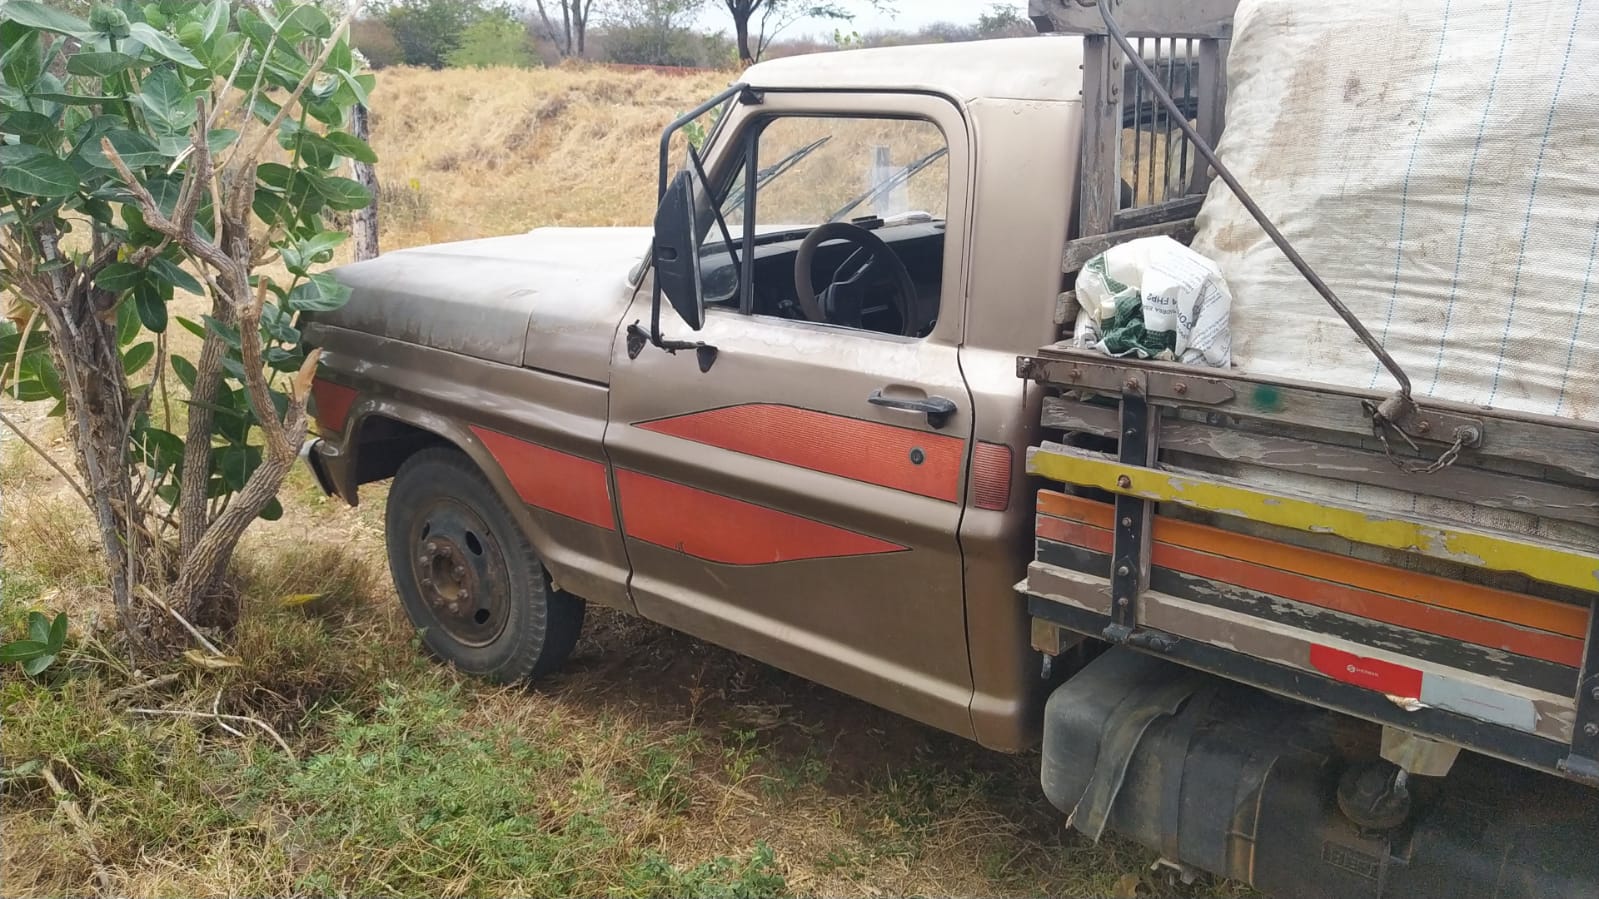 Polícia recupera caminhonete e prende suspeitos do furto em Guanambi